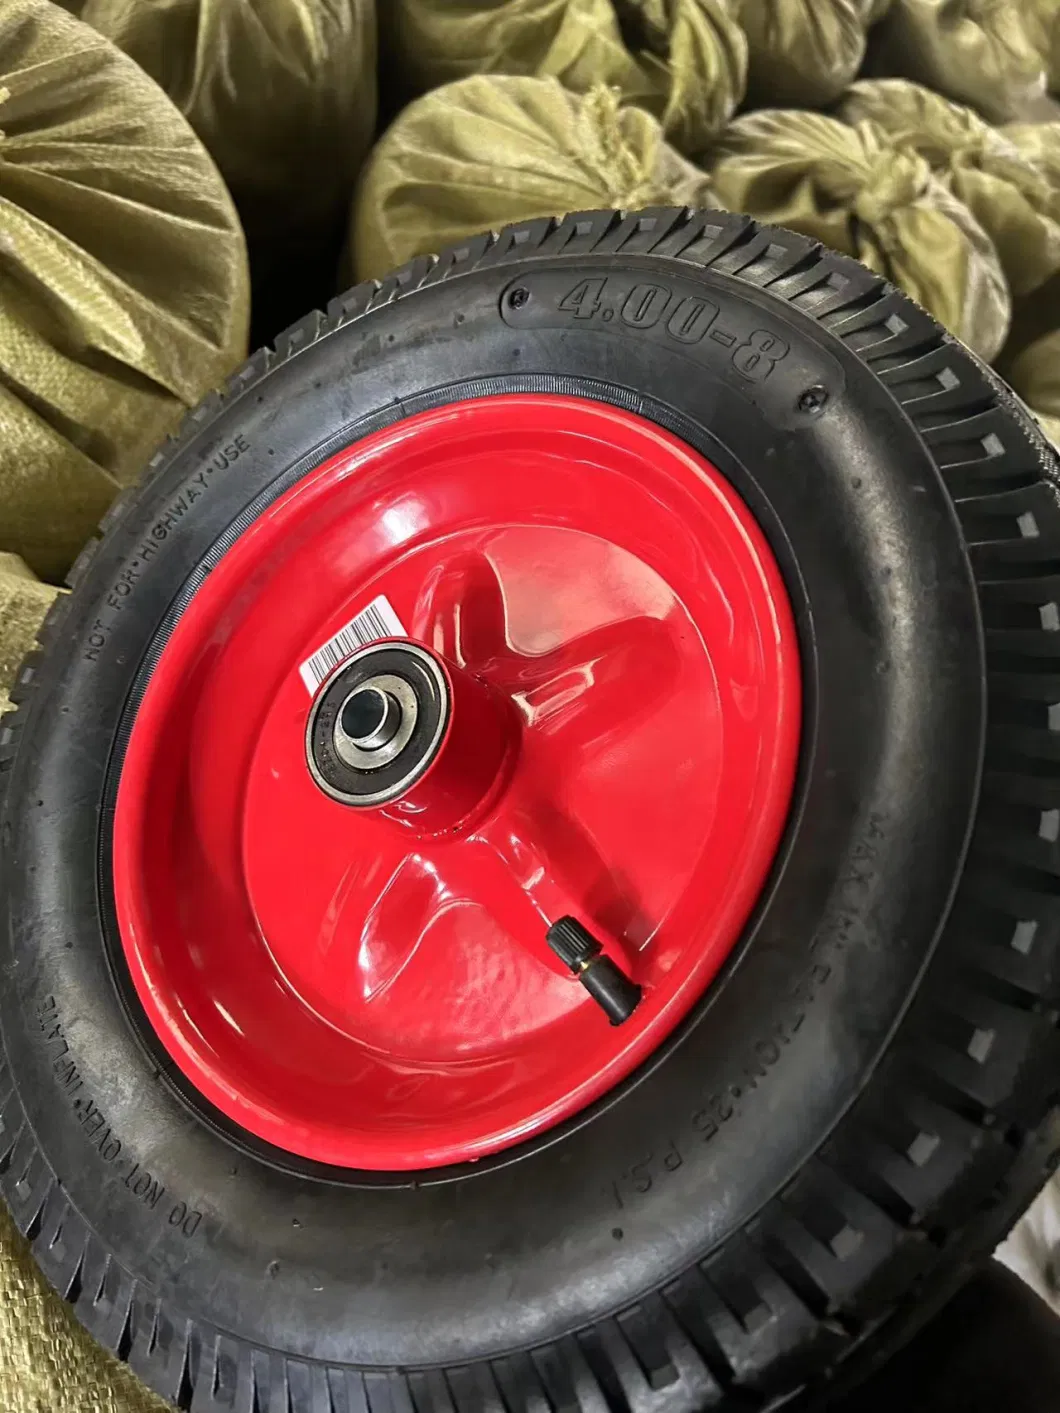 16 Inch 4.00-8 Wheelbarrow Tyre Pneumatic Wheel Rubber Wheel